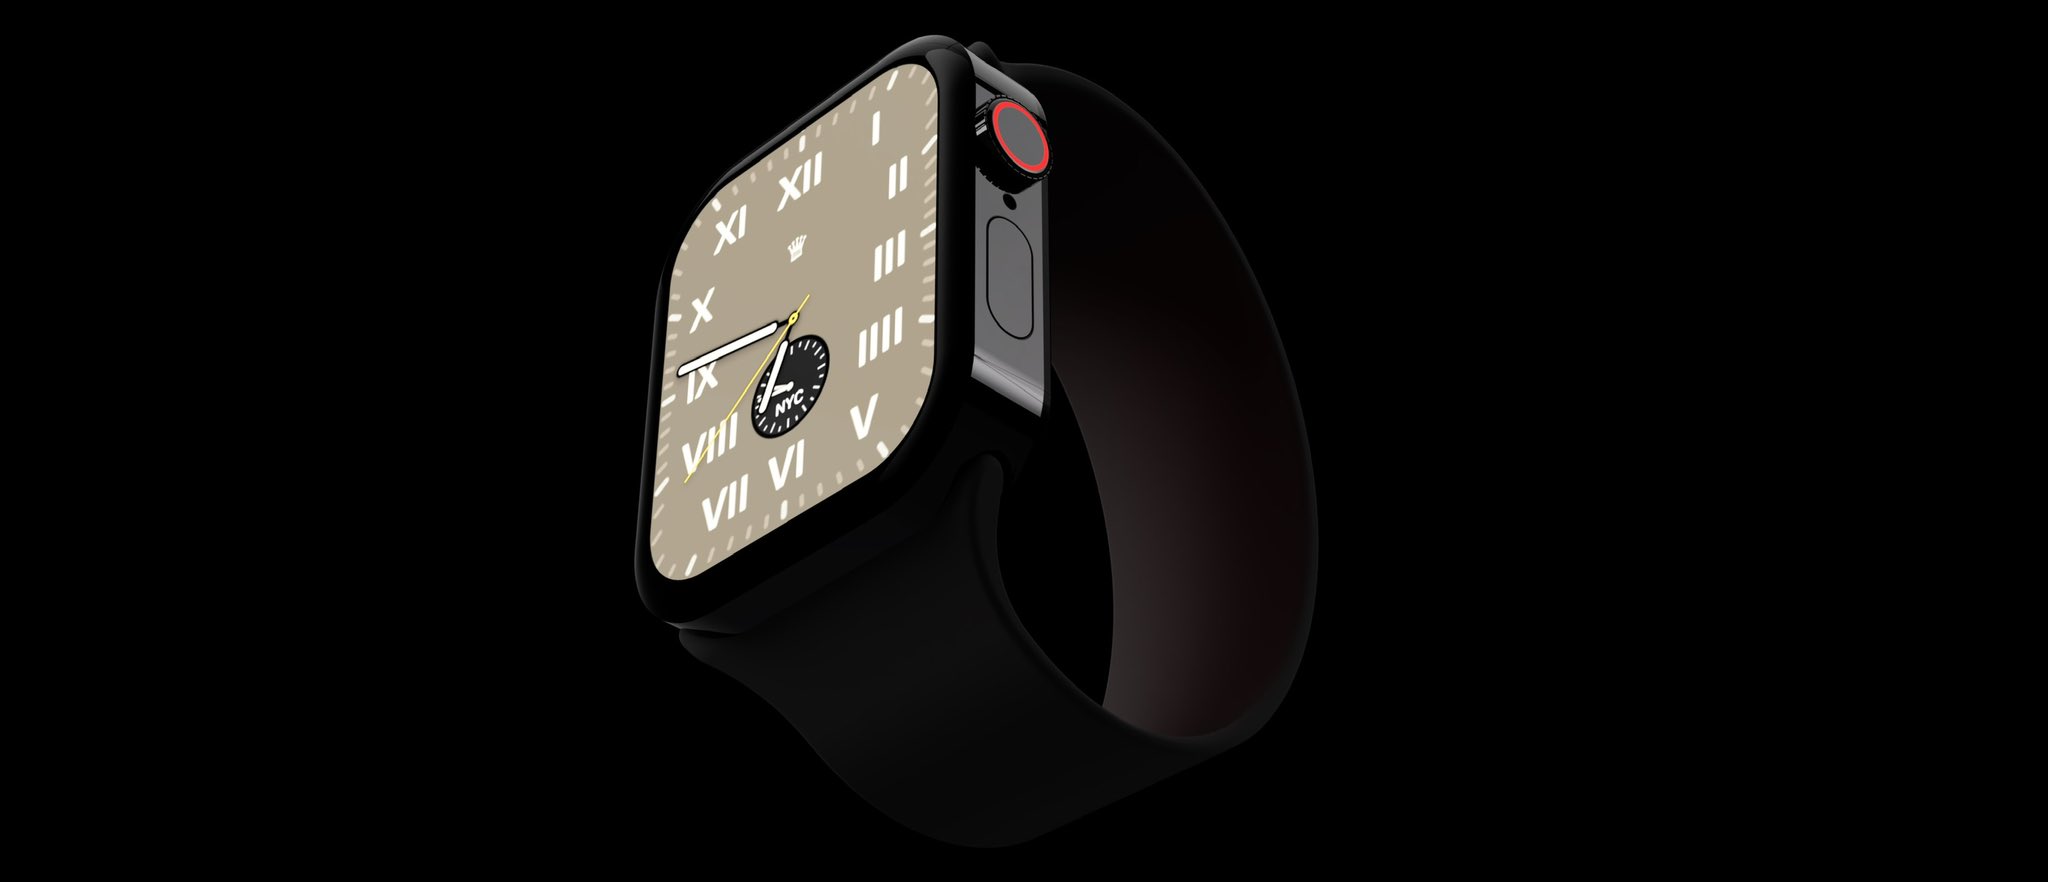 Apple Watch Series 7 có thiết kế hoàn toàn mới